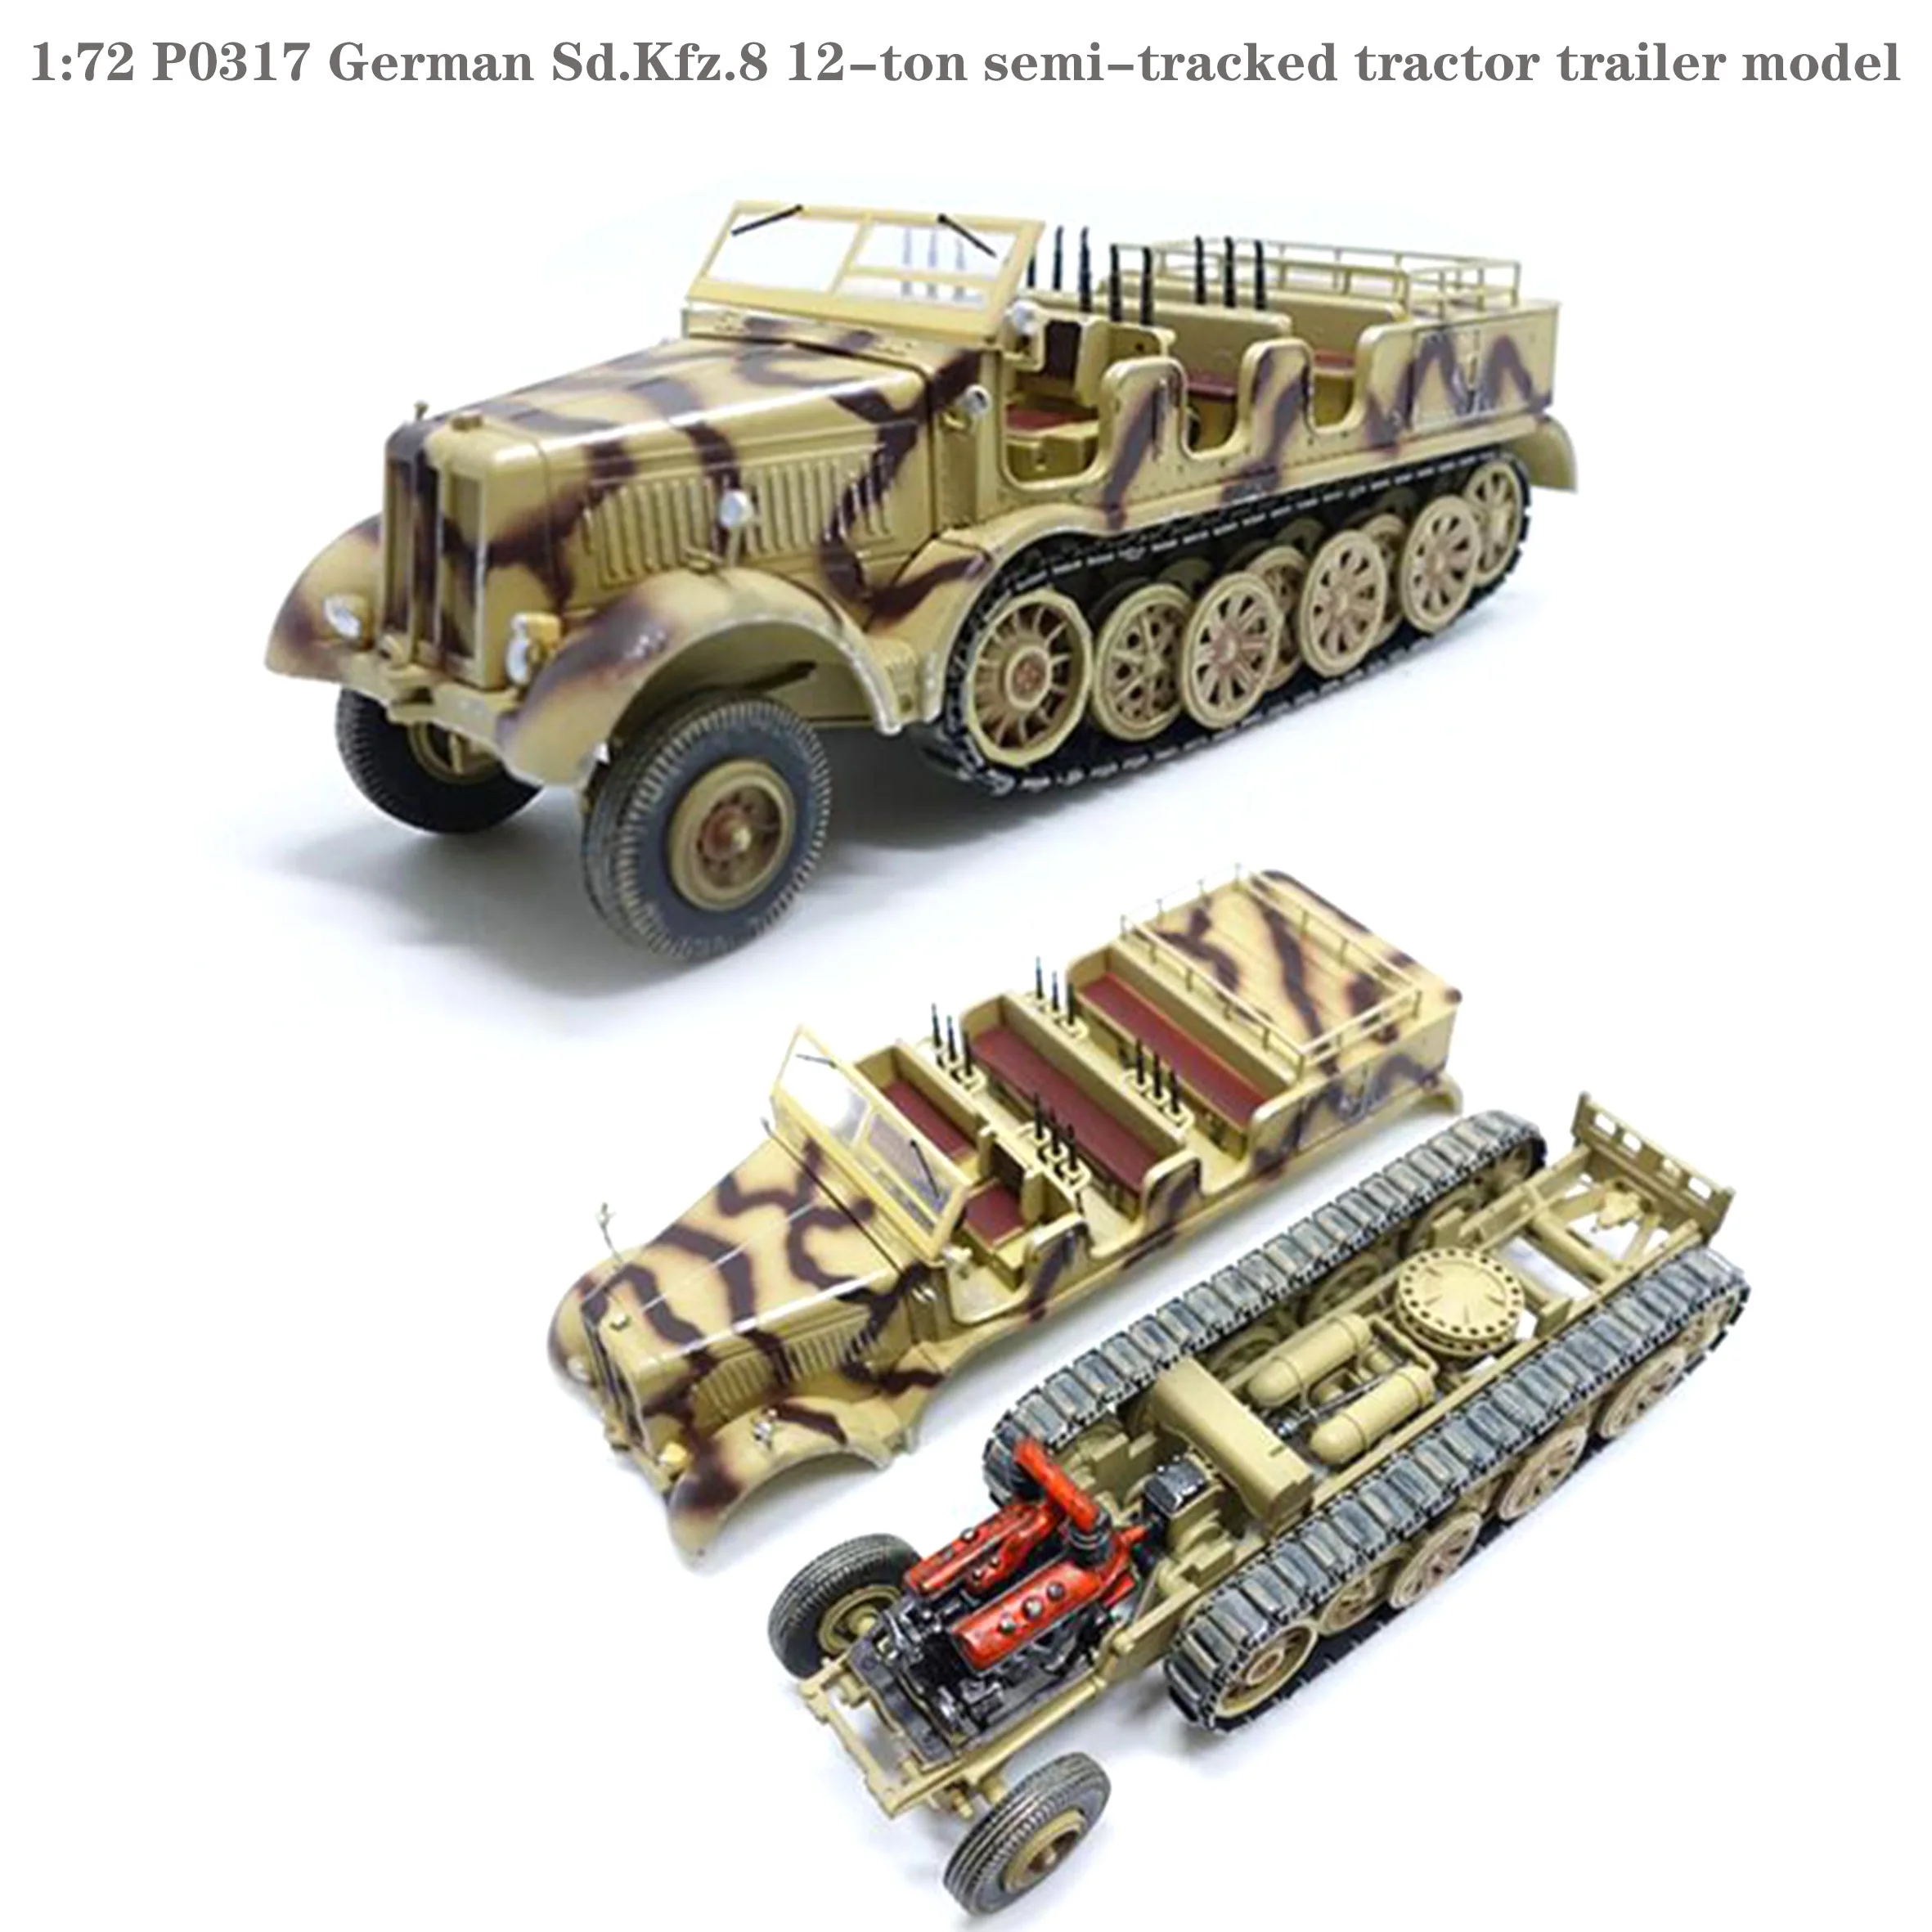 tres-bien-1-72-p0317-allemand-sdkfz8-12-tonnes-semi-chenille-tracteur-remorque-modele-produit-fini-modele-de-collection